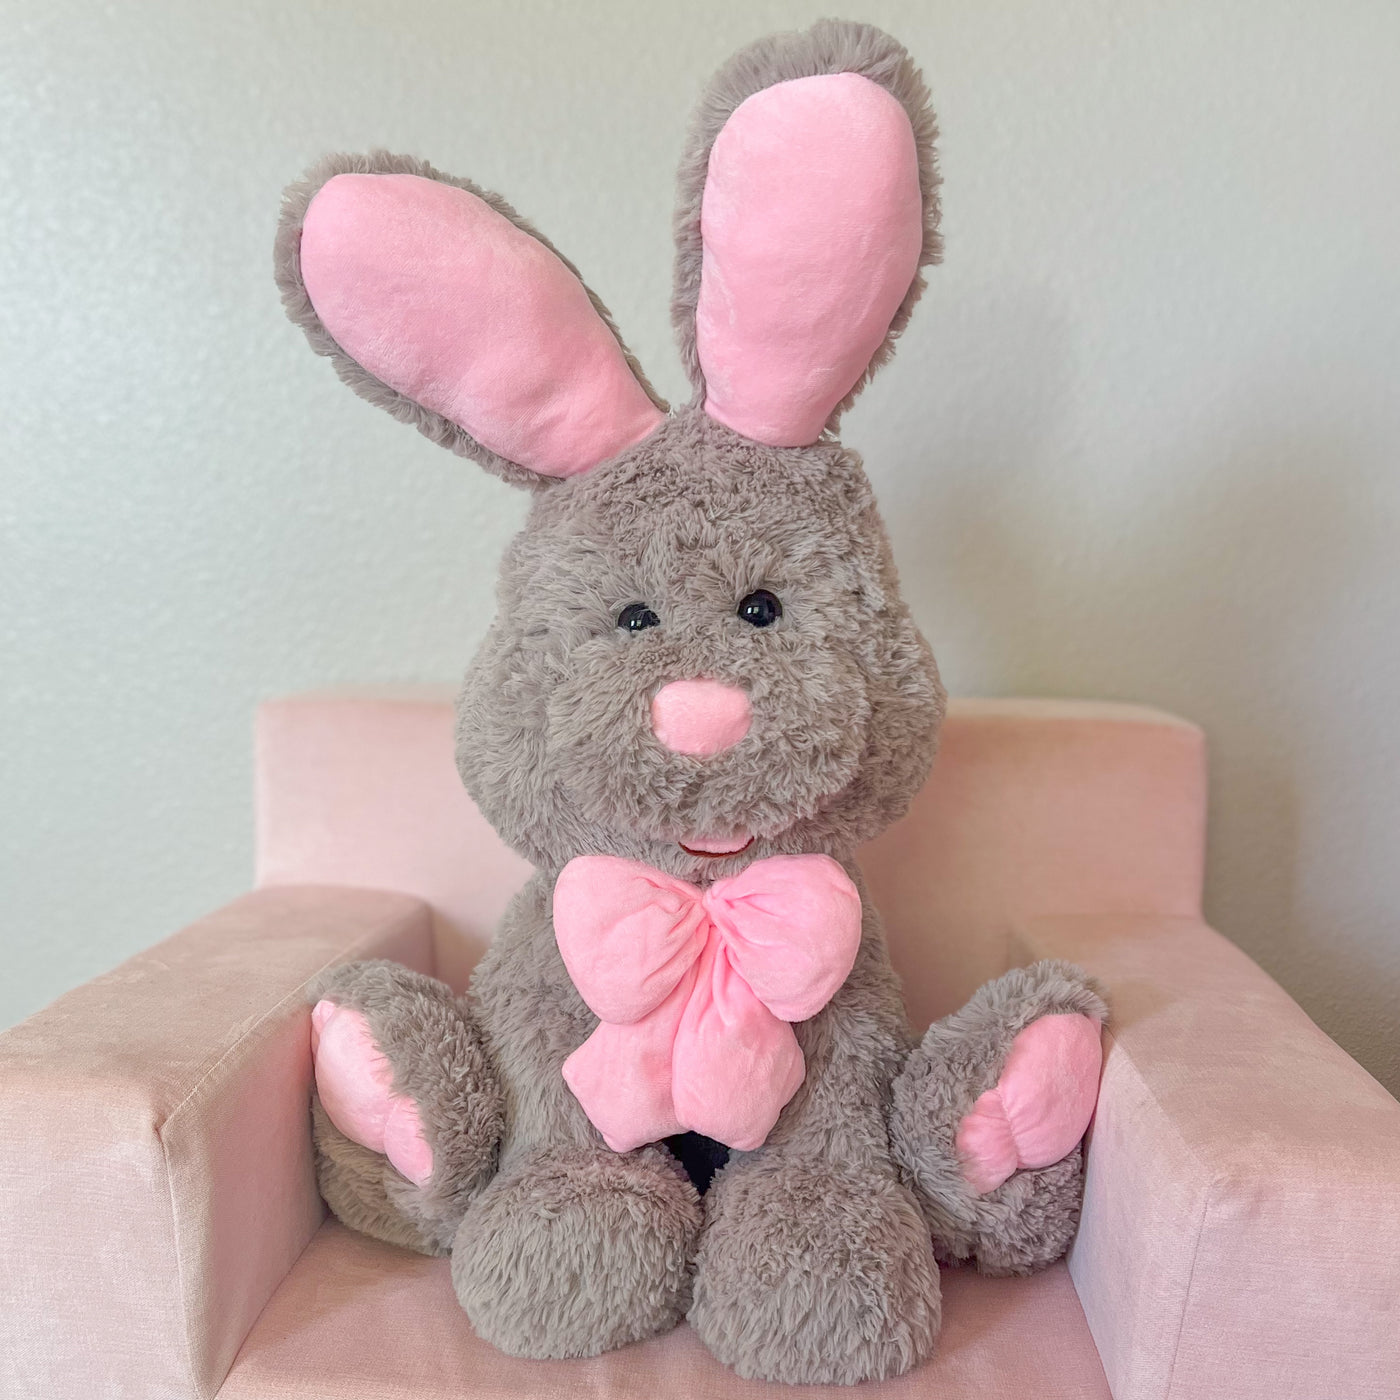 Giant Bunny Stuffed Animal Toy, 31.5"